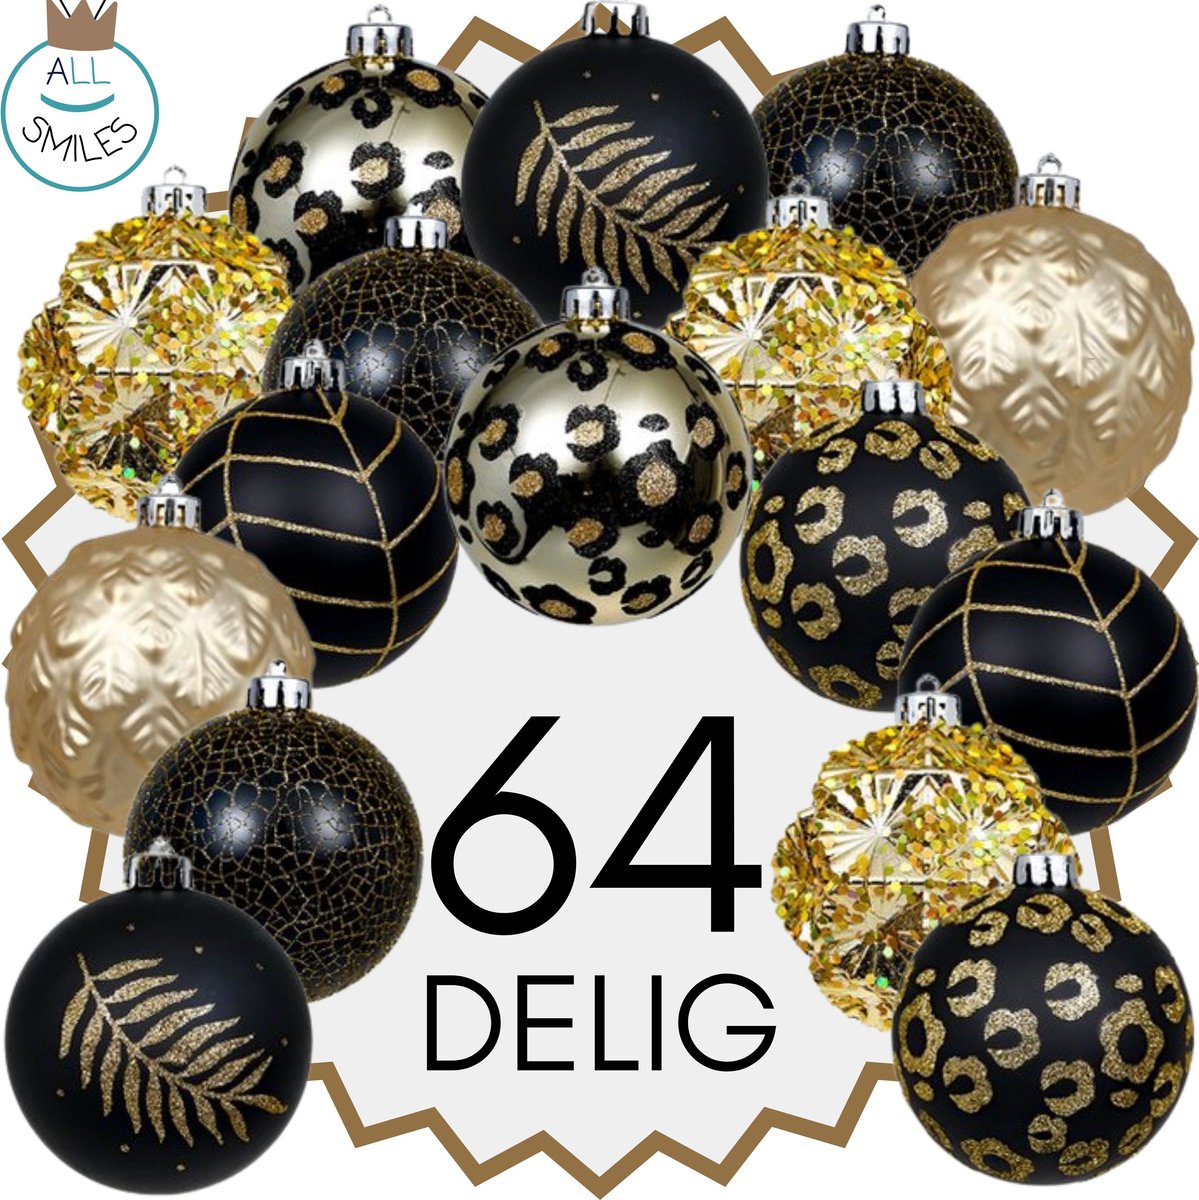 Grote Set Kerstballen - 64 Delige Set - Kerstversiering - Goud - Zwart - Verschillende Afwerkingen - Kerstboom Kerstballen - Voor een gehele kerstboom - Kerst Versiering